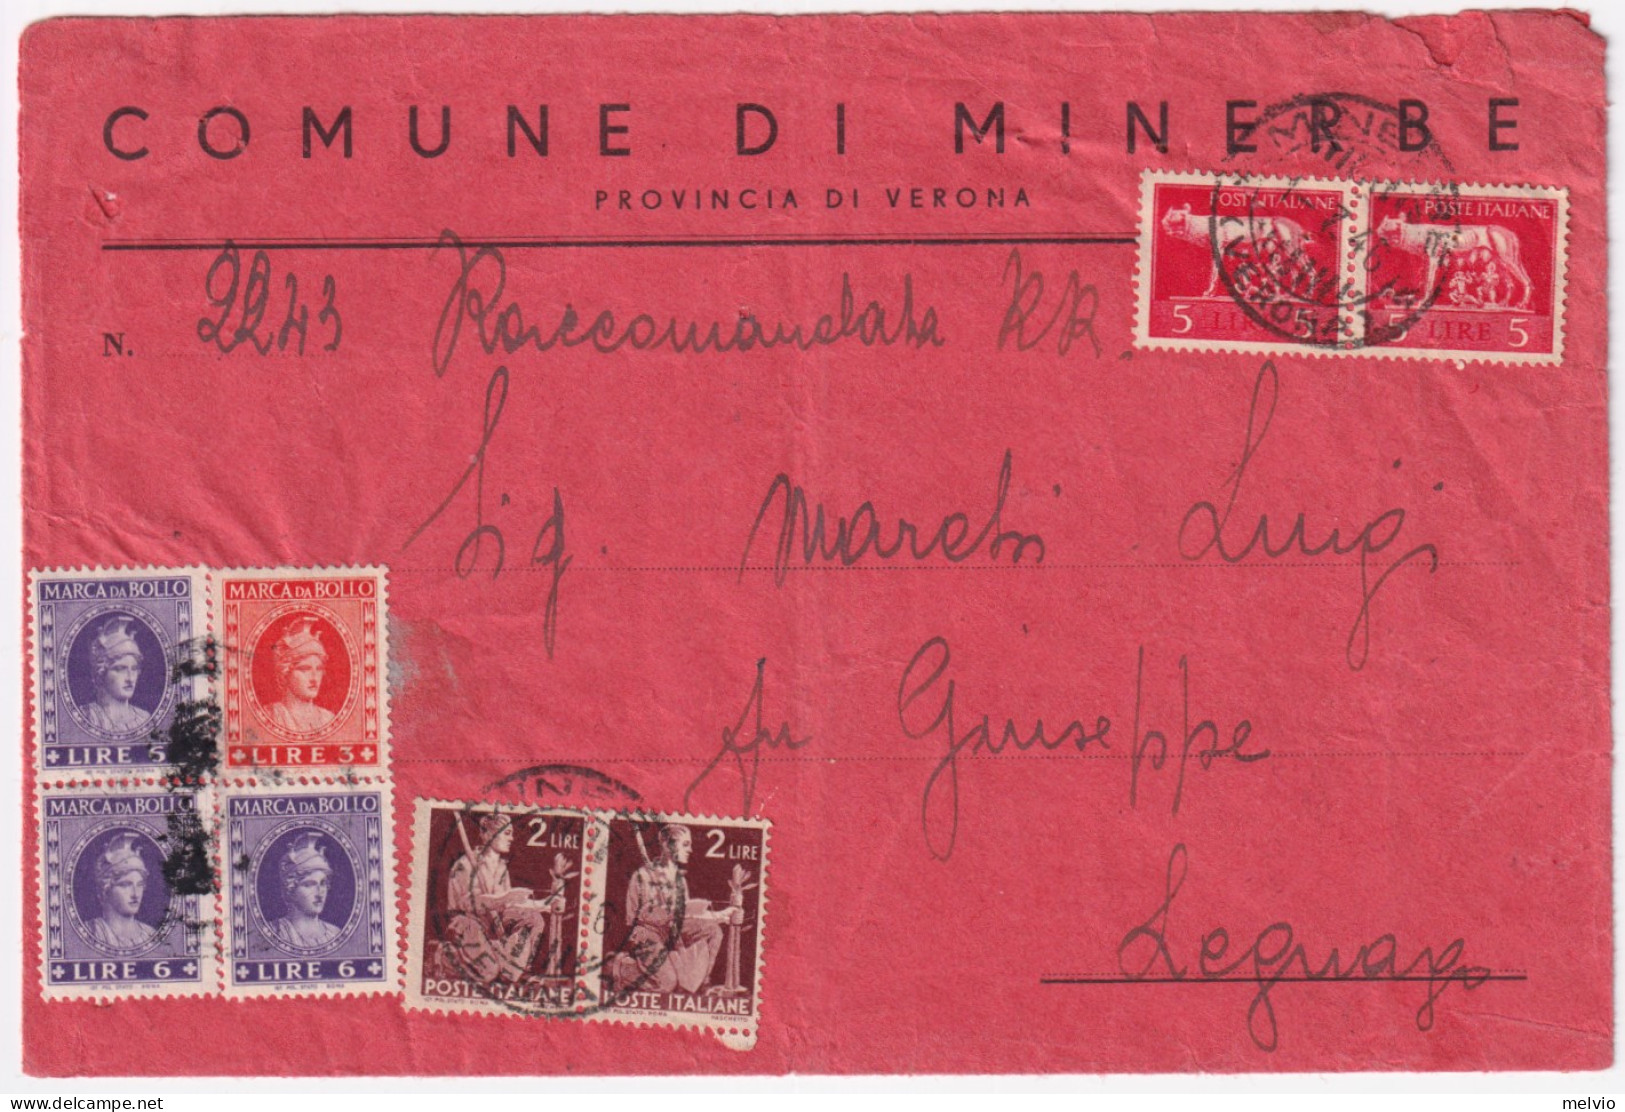 1946-Imperiale Senza Fasci Coppia Lire 5 + Democratica Coppia Lire 2 Su Raccoman - Marcophilia